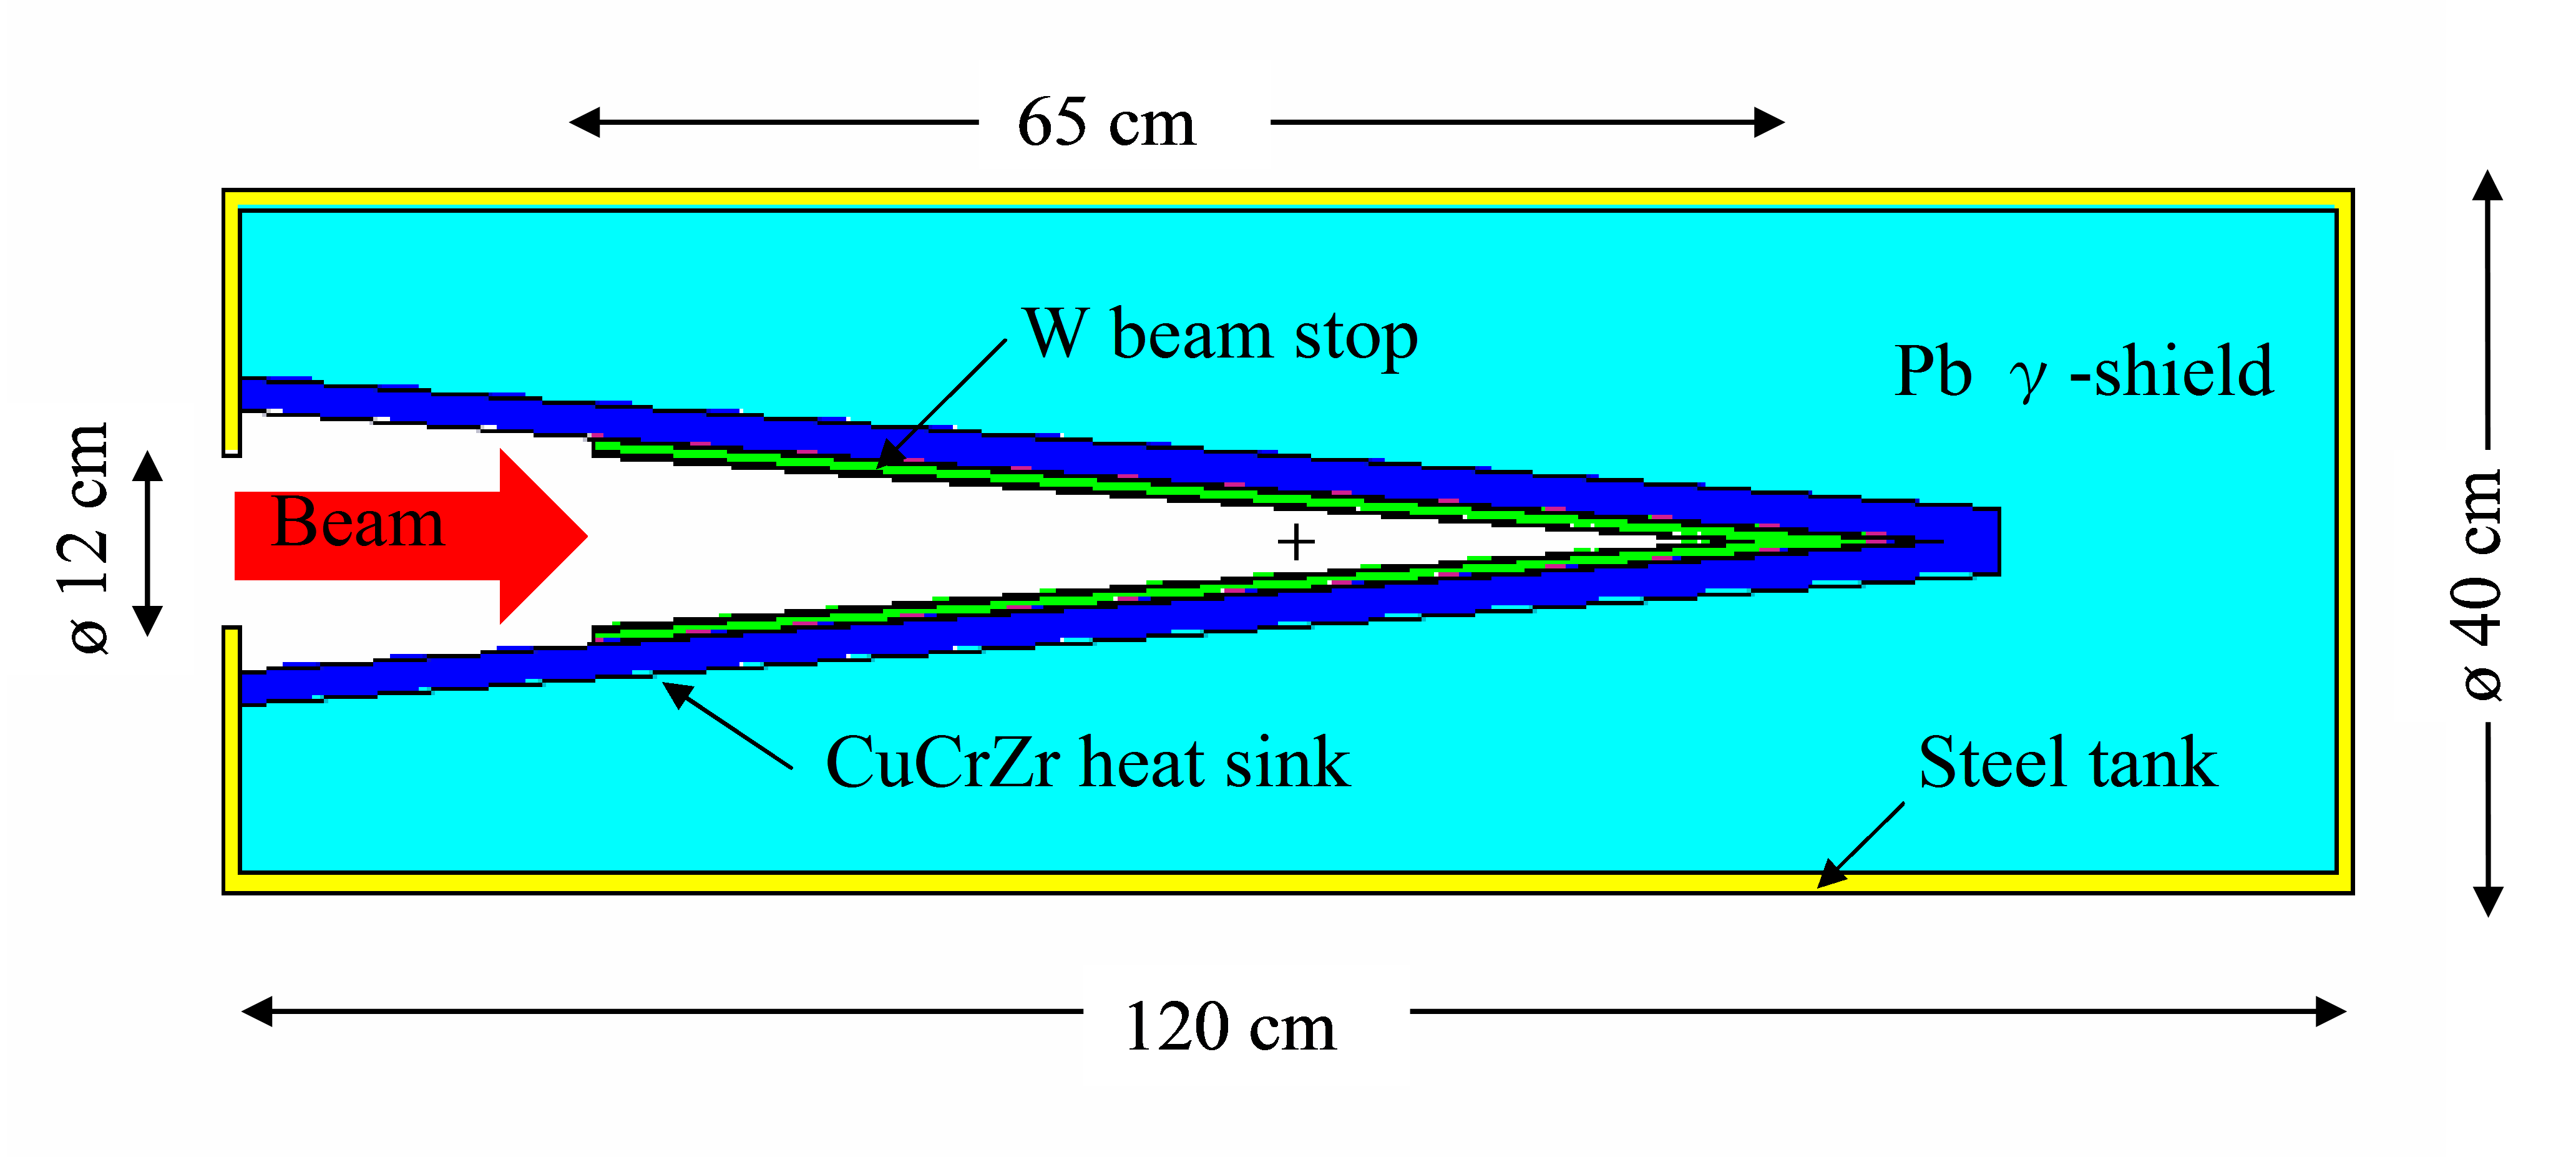 Model of beam dump